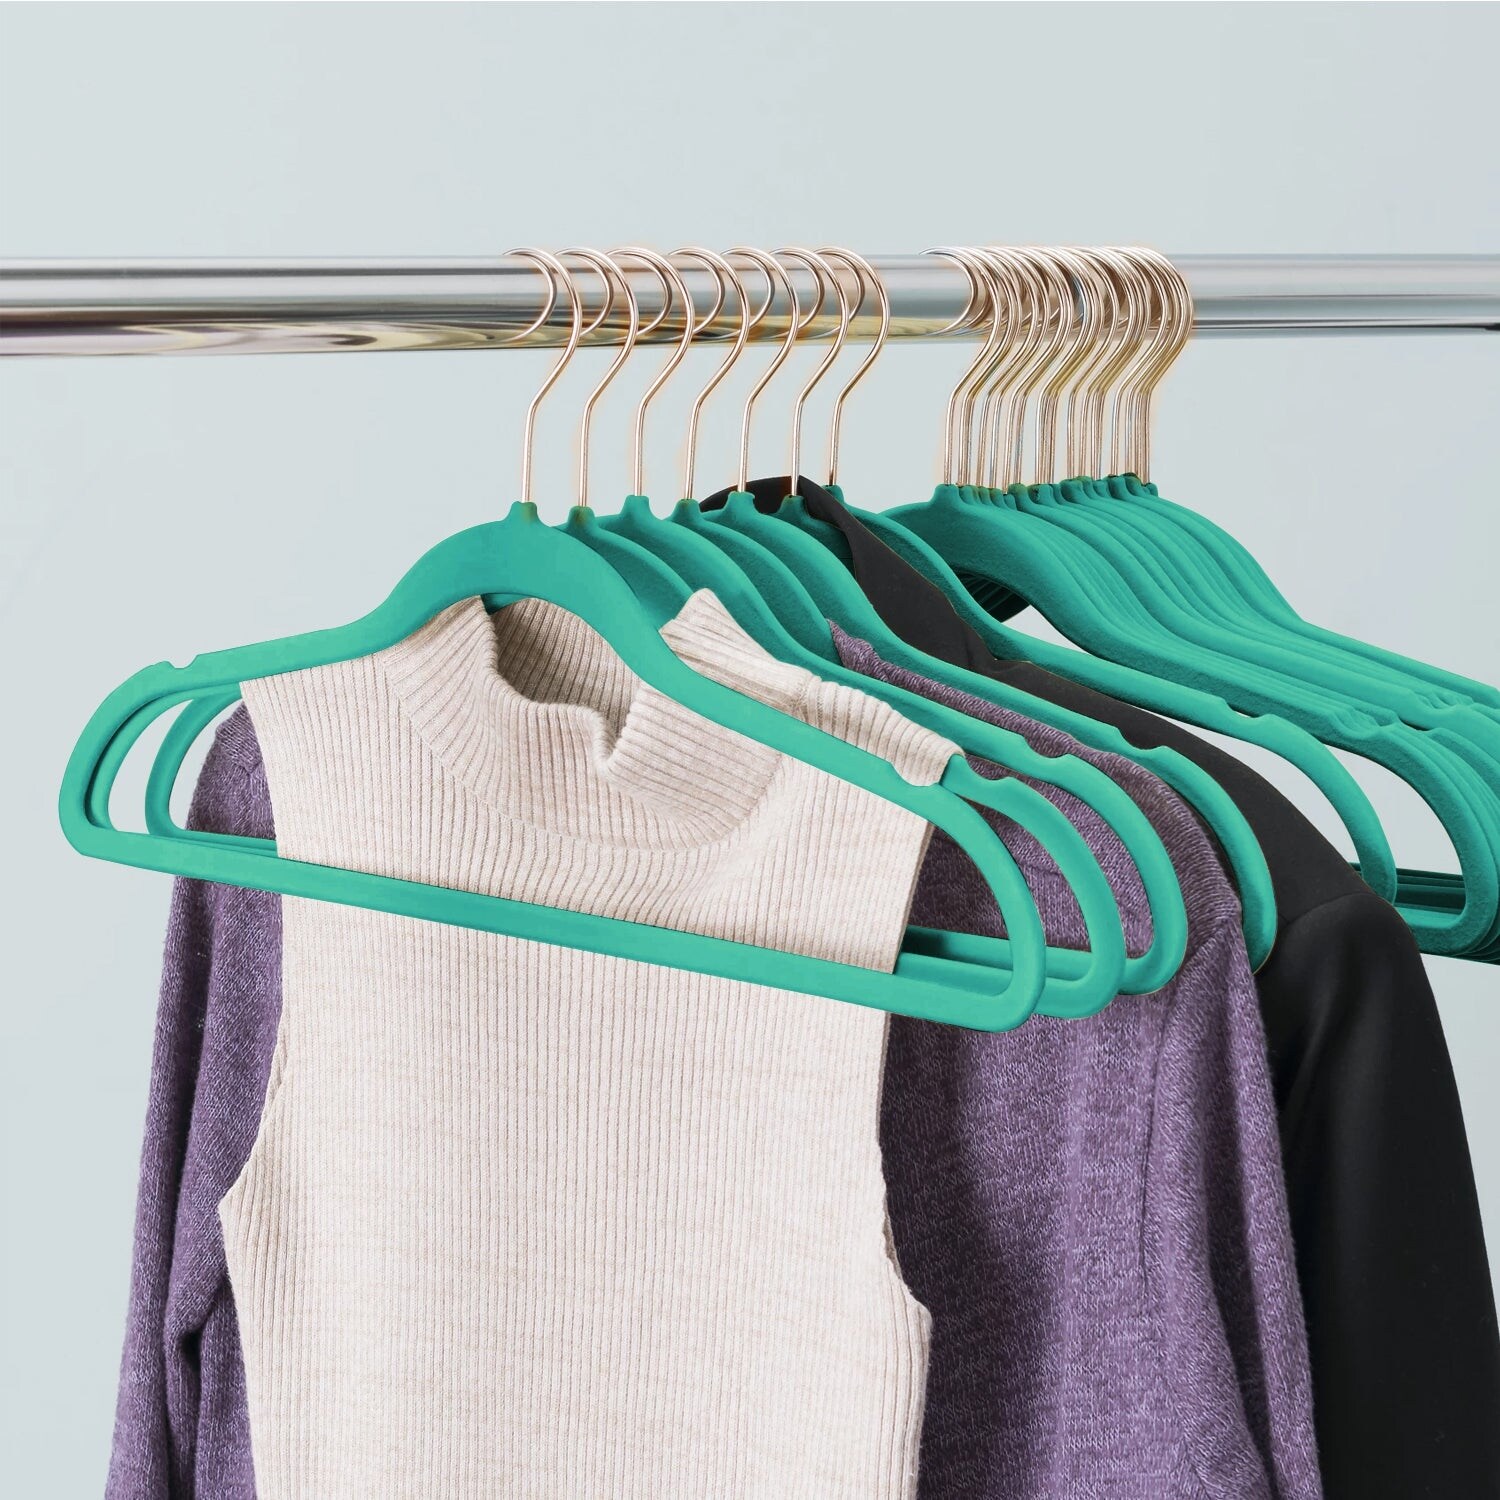 Velvet Clothes Hangers (20, 40, 60, 100 Packs) Heavy Duty Durable Coat and Clothes  Hangers, Vibrant Color Hangers